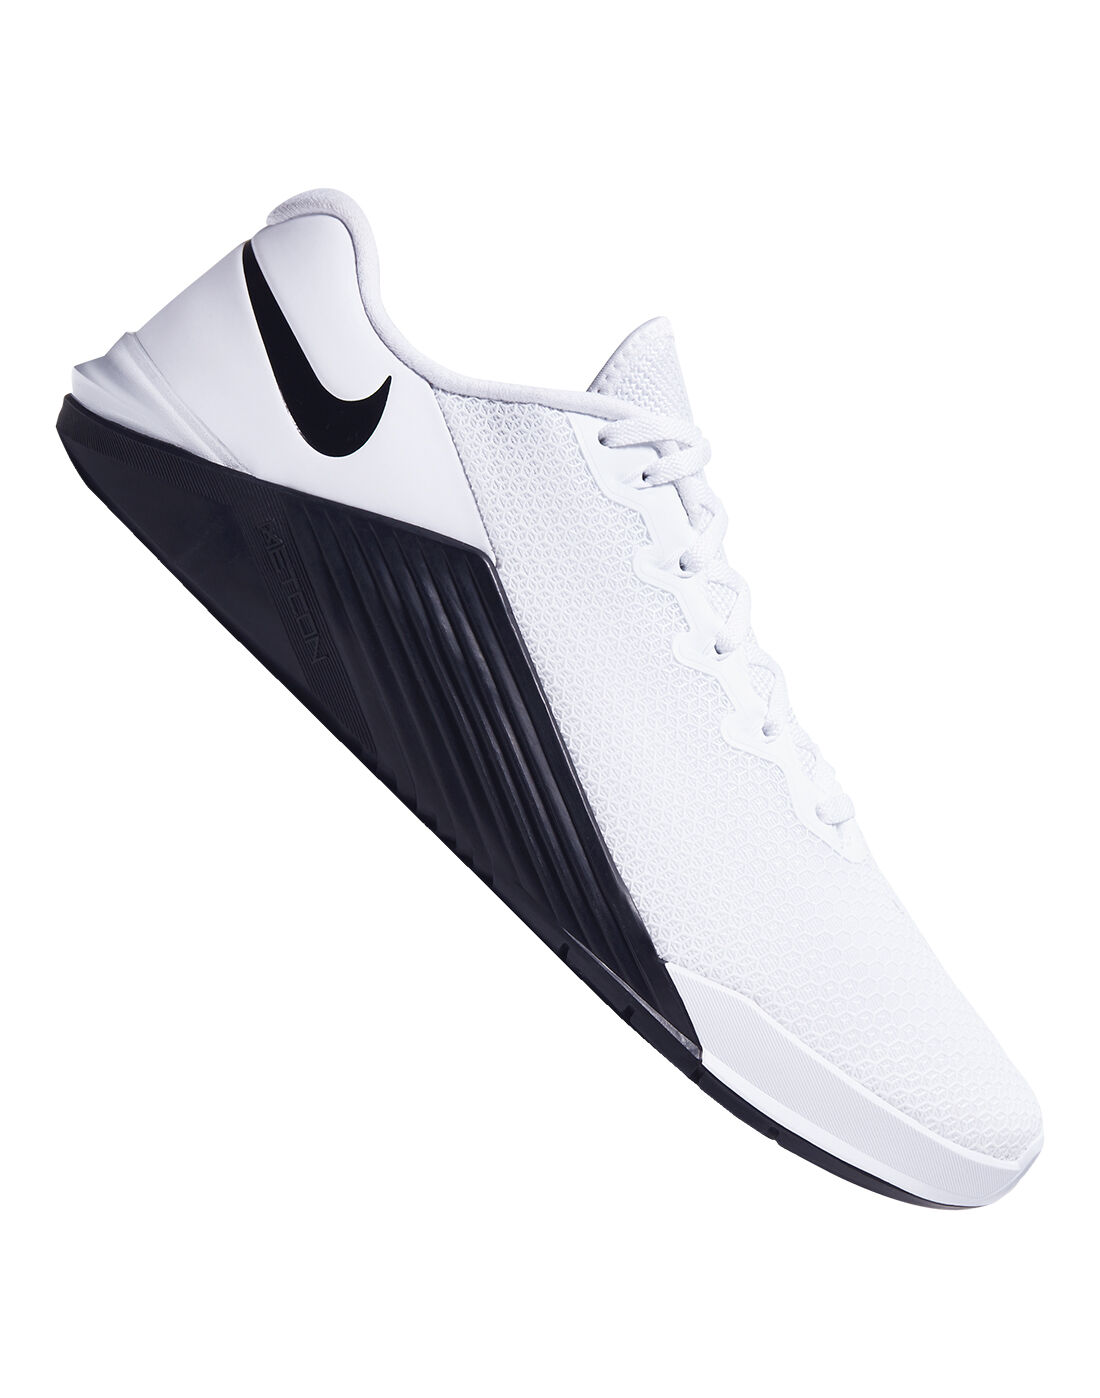 Nike Mens Metcon 5 - White | Life Style 